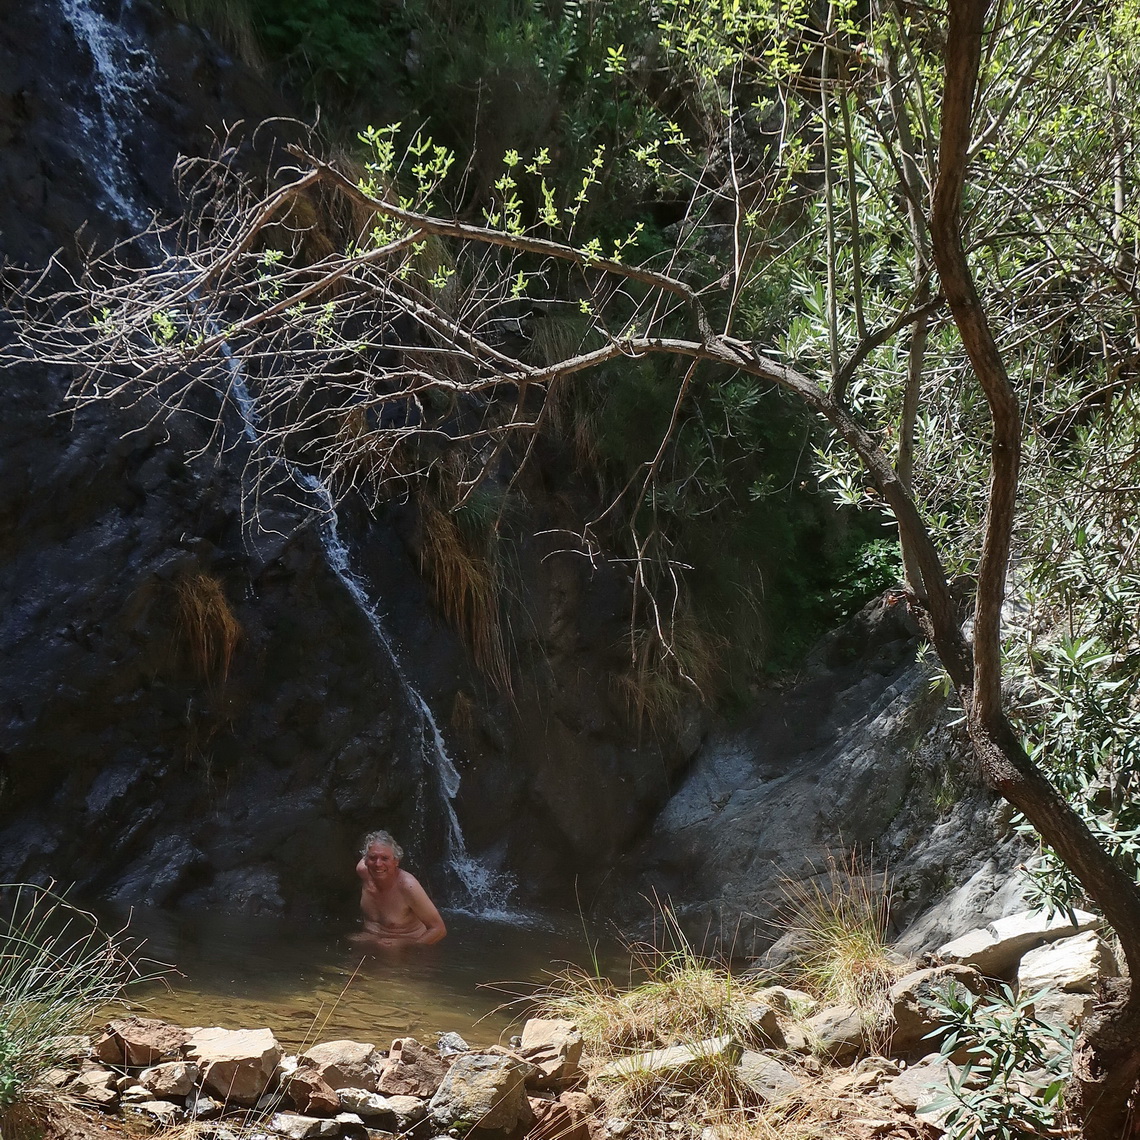 Very cold bath in the Cascada de la Rejia